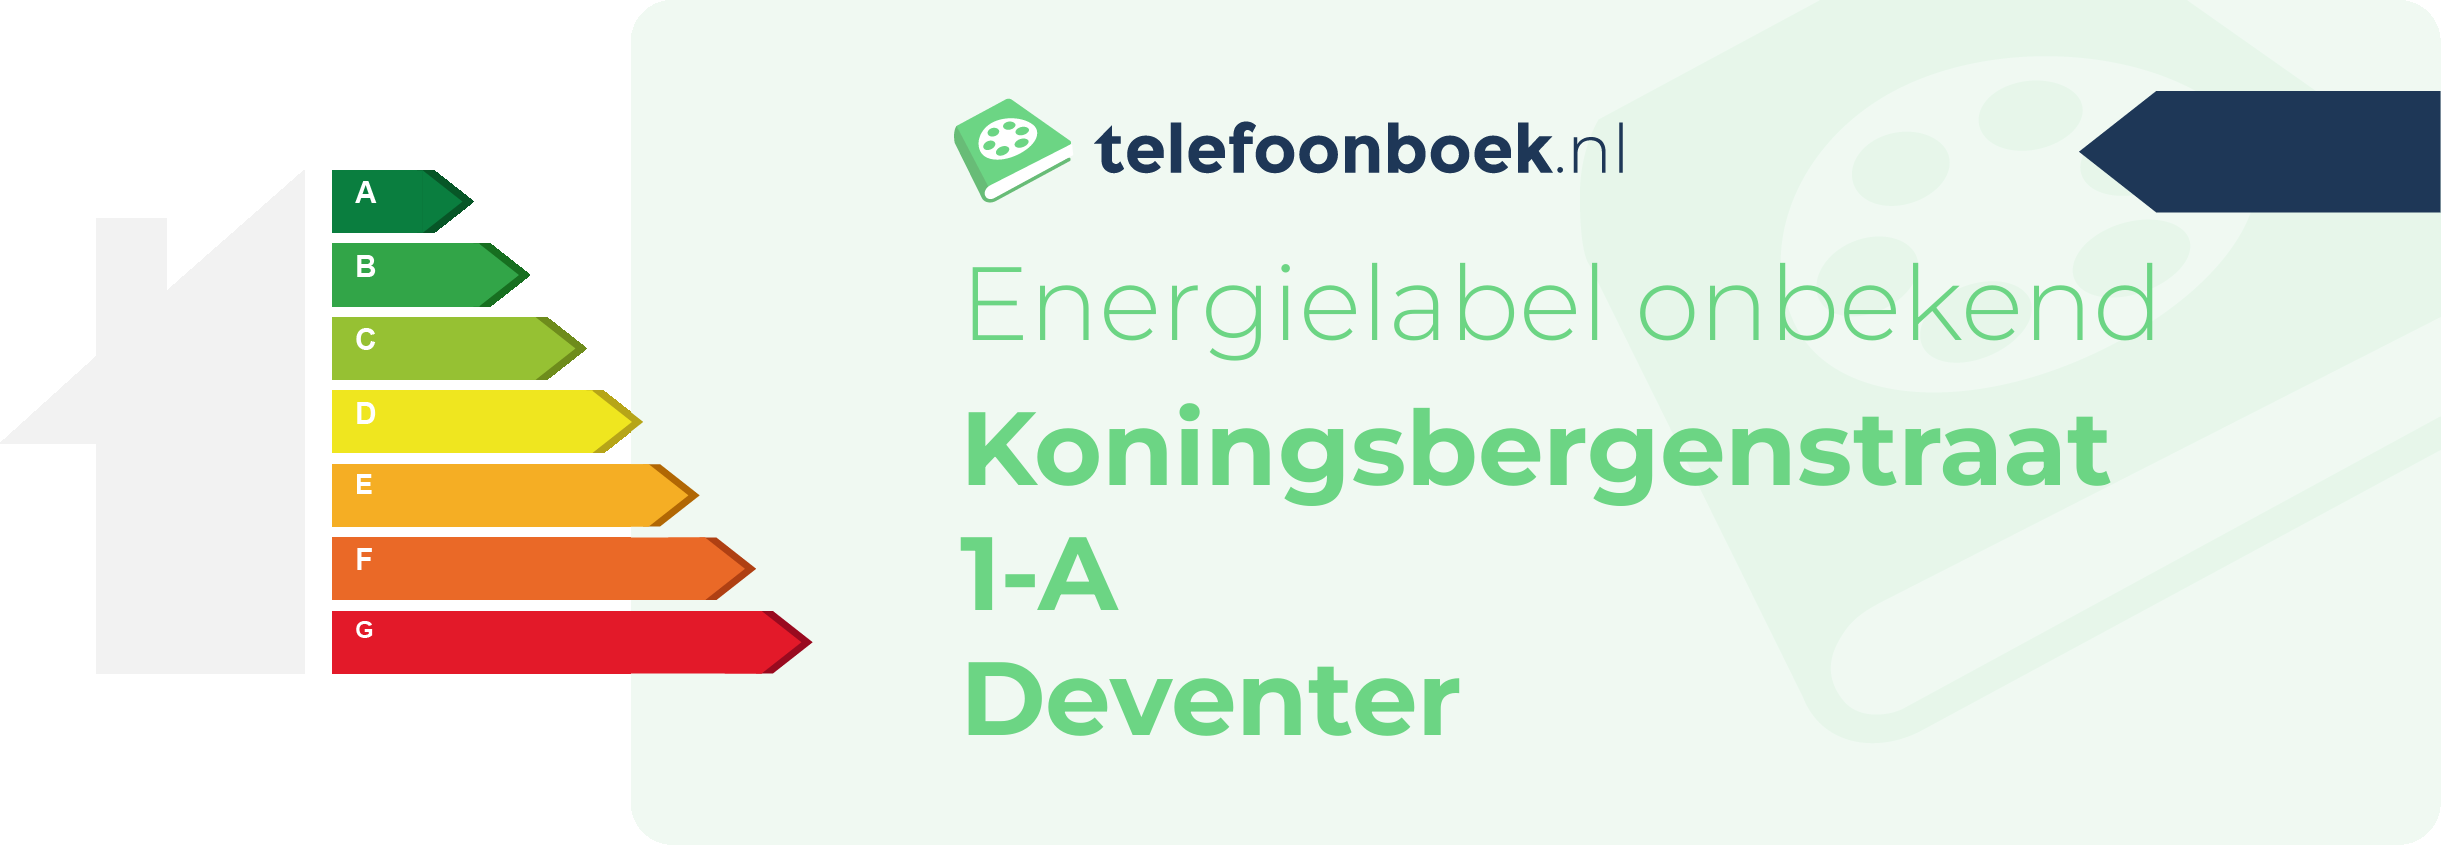 Energielabel Koningsbergenstraat 1-A Deventer